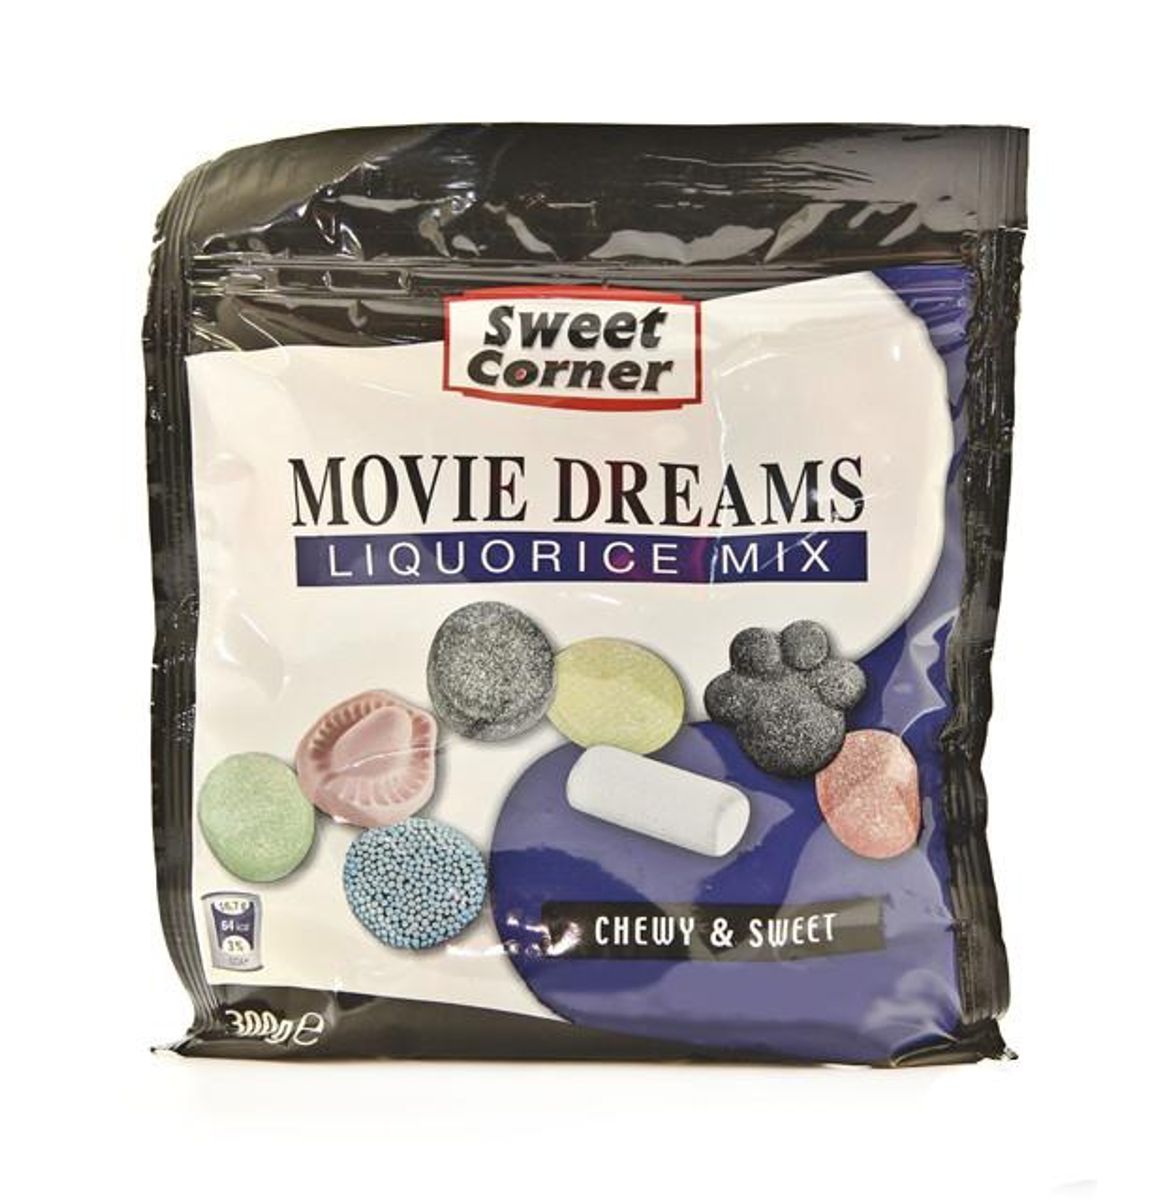 Det er dette slik, ”Sweet Corner Movie Dreams”, som Lidl har kaldt tilbage. Foto: Fødevarestyrelsen.